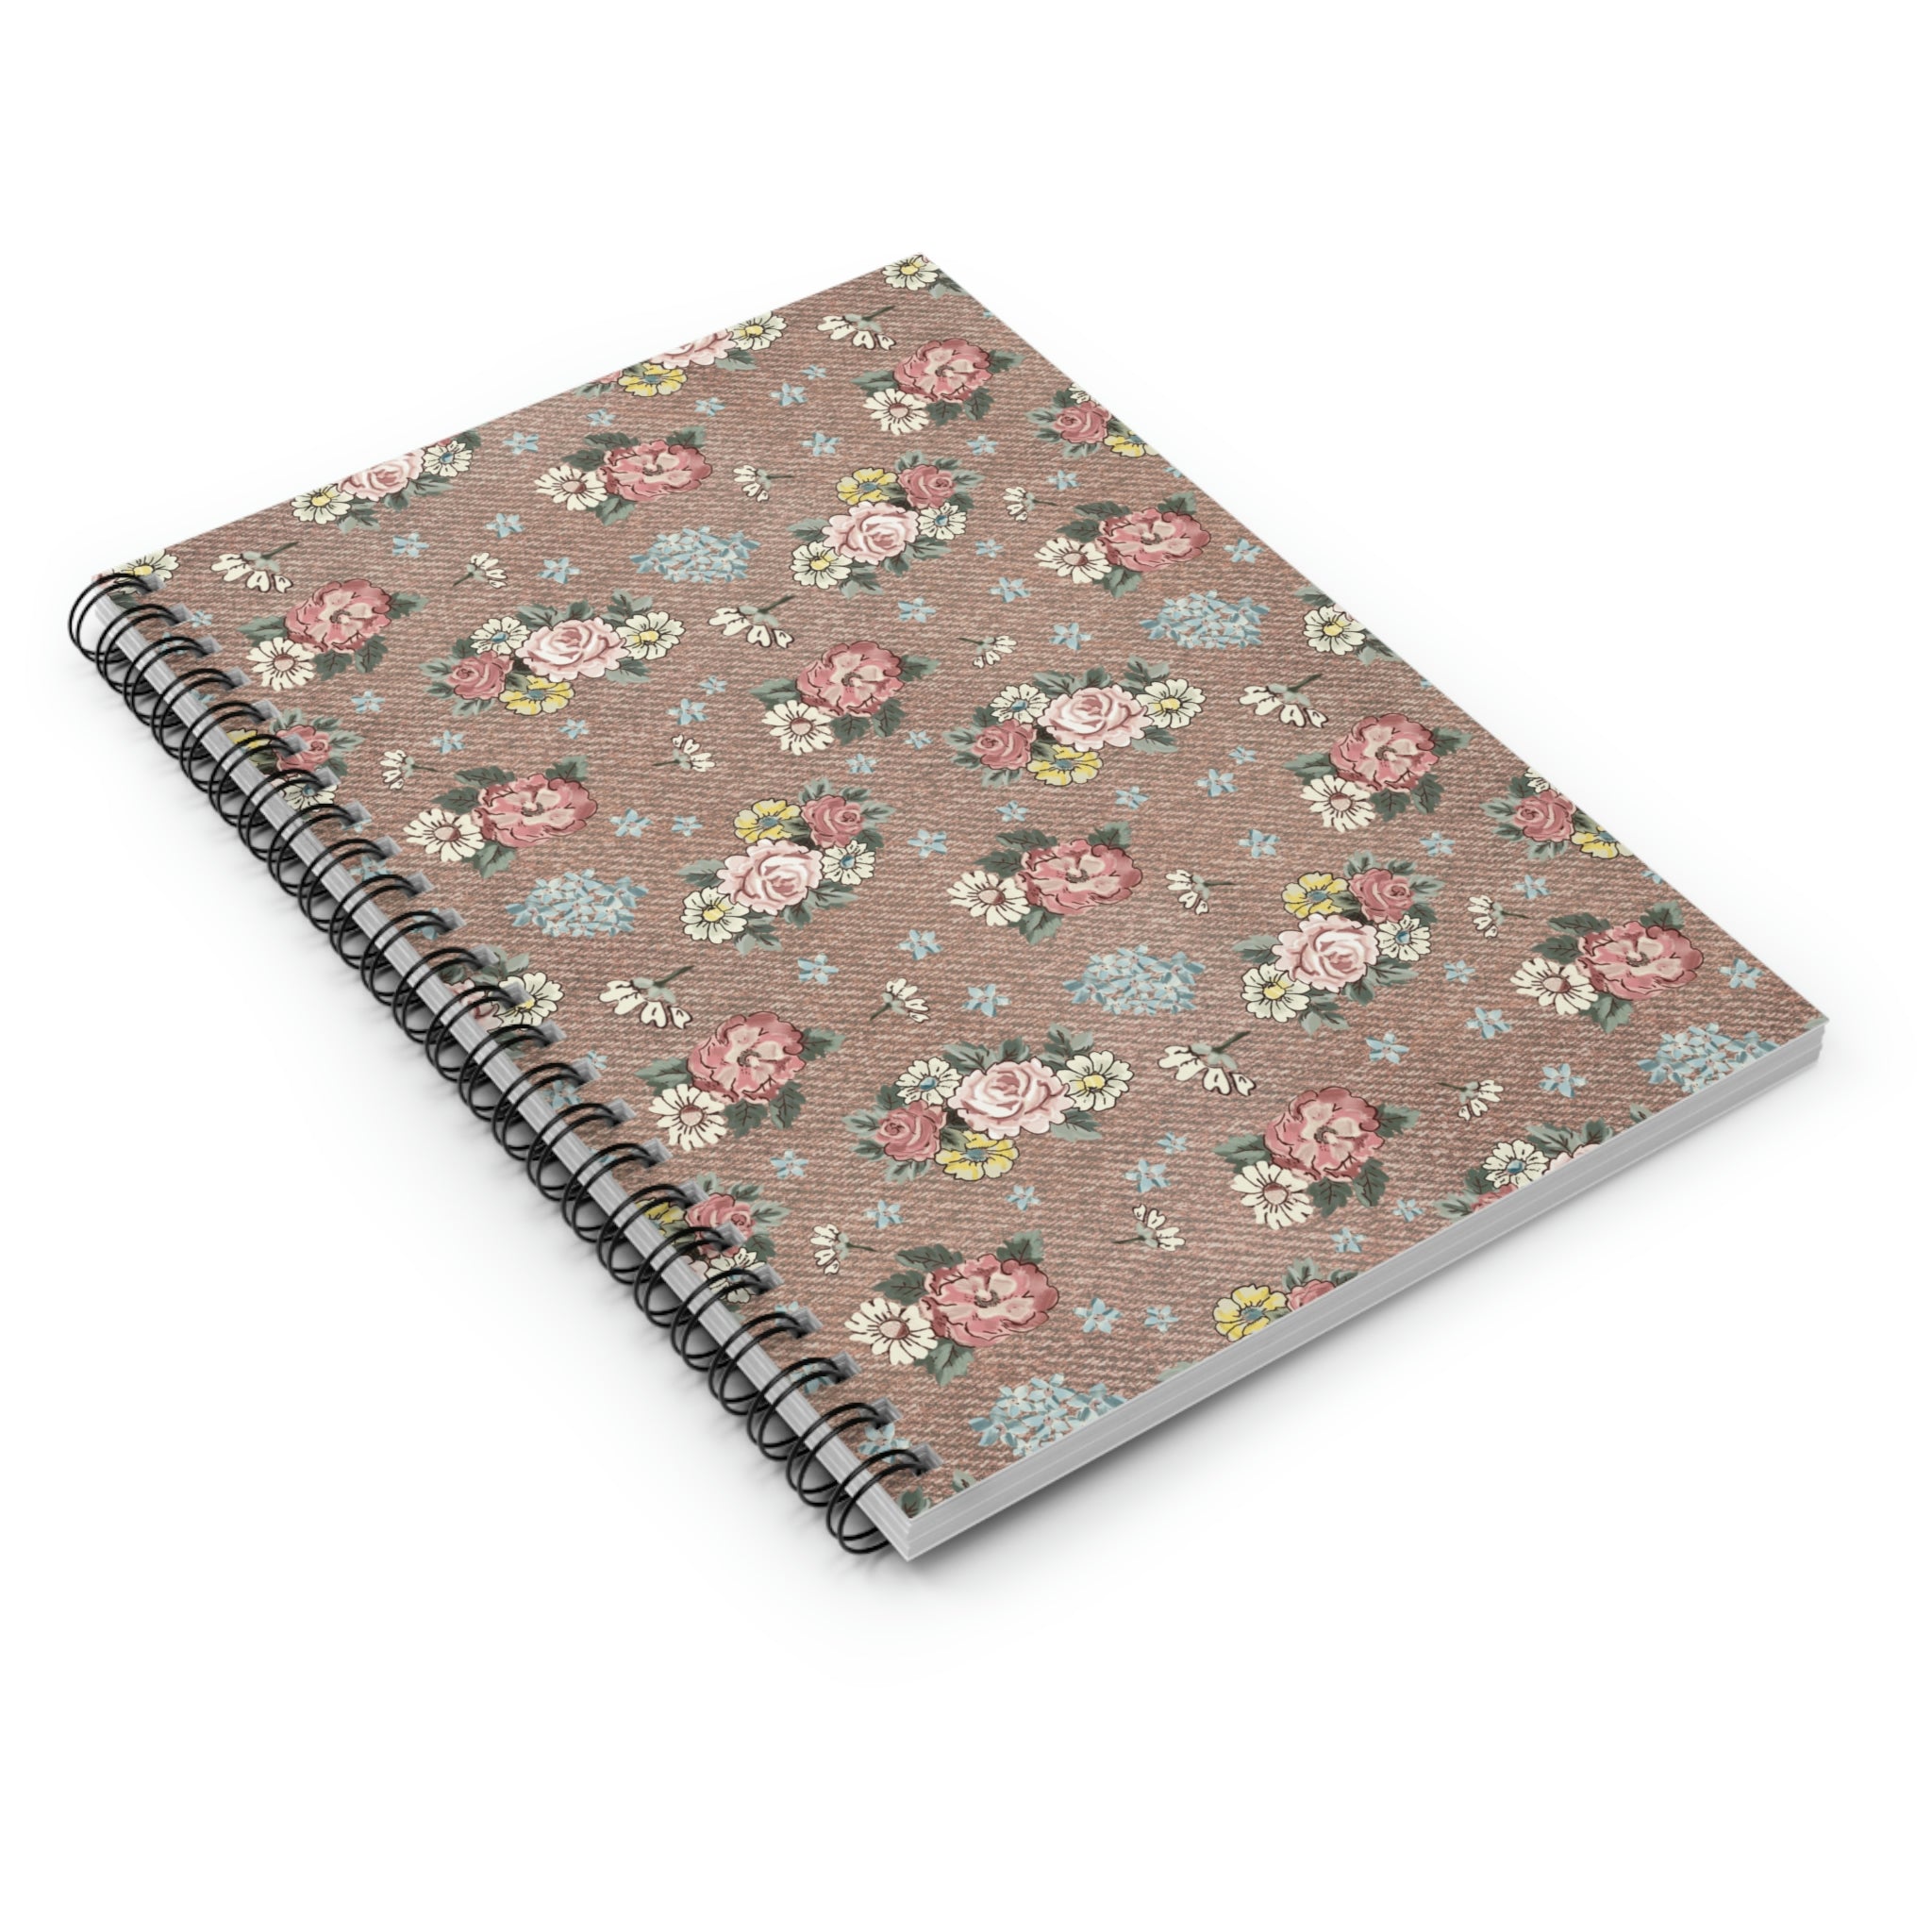 Spiral Notebook - Ruled Line / Burlap floral